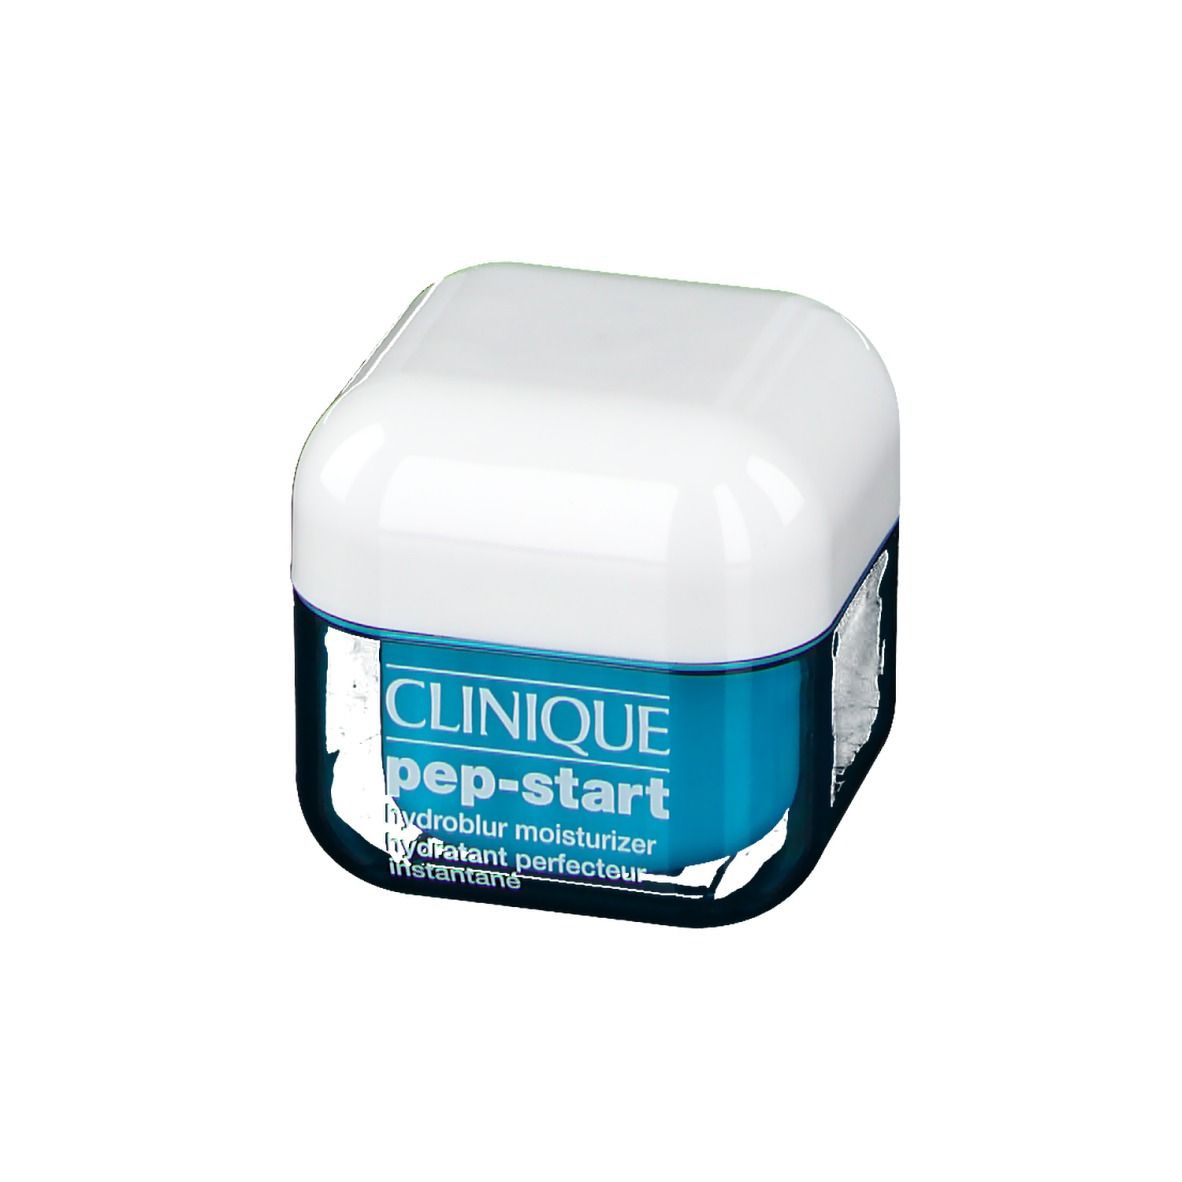 CLINIQUE Pep-Start™ Hydratant Perfecteur Instantané